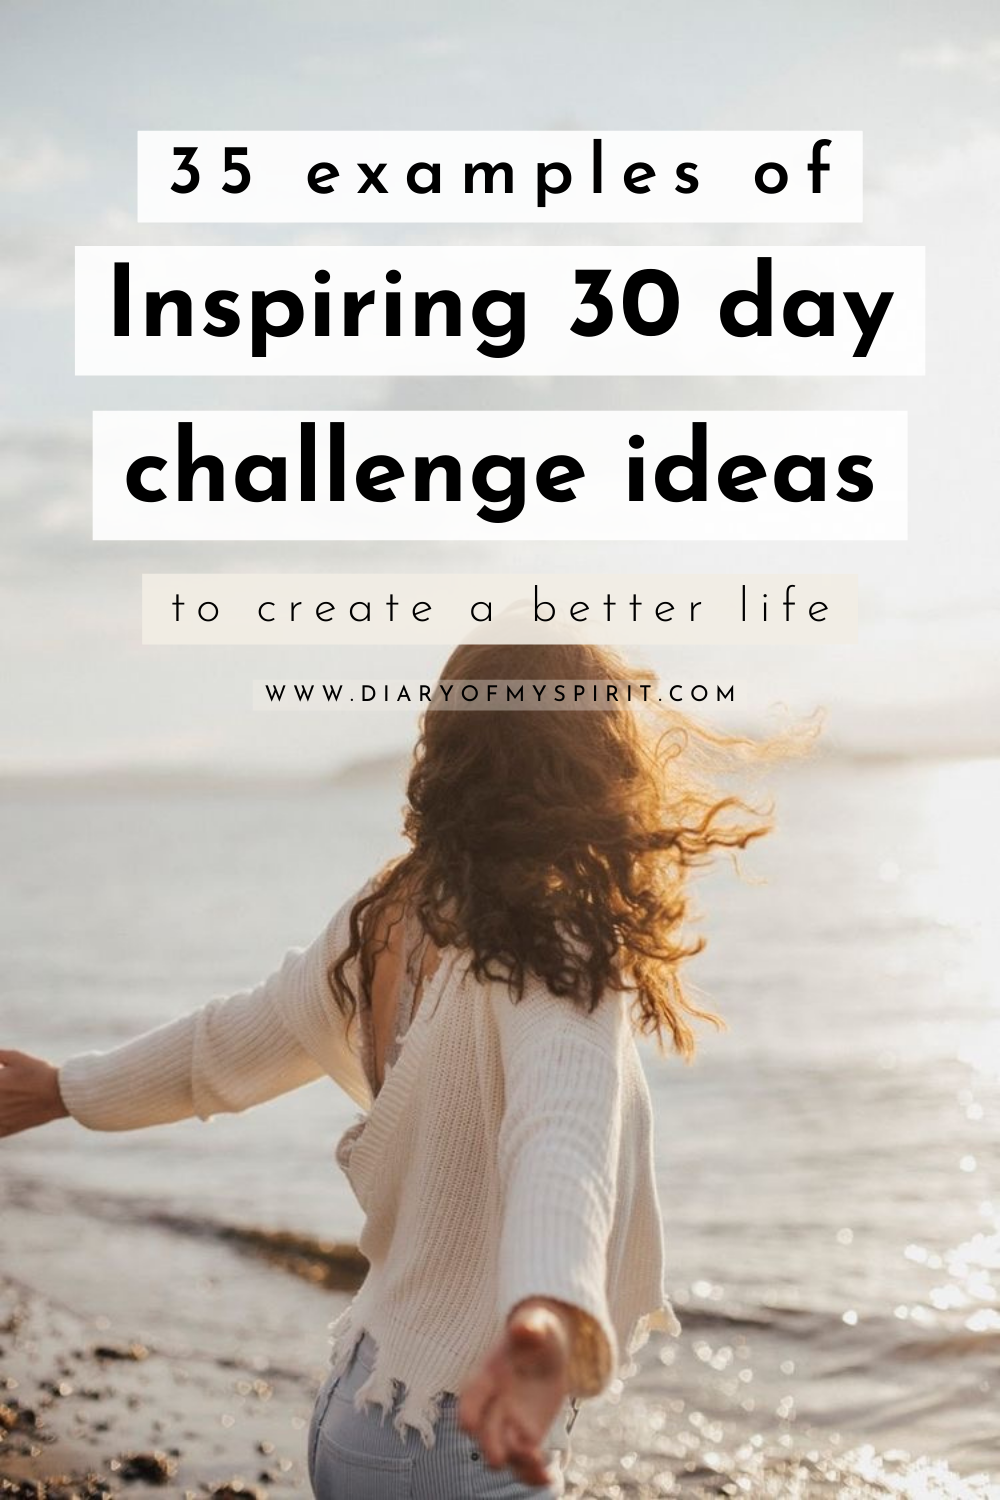 30 day challenge ideas. 30 days challenge ideas. 30 days challenge. challenges 30 days. month challenges. monthly challenges. monthly challenge. 30 daily challenges. month challenges.